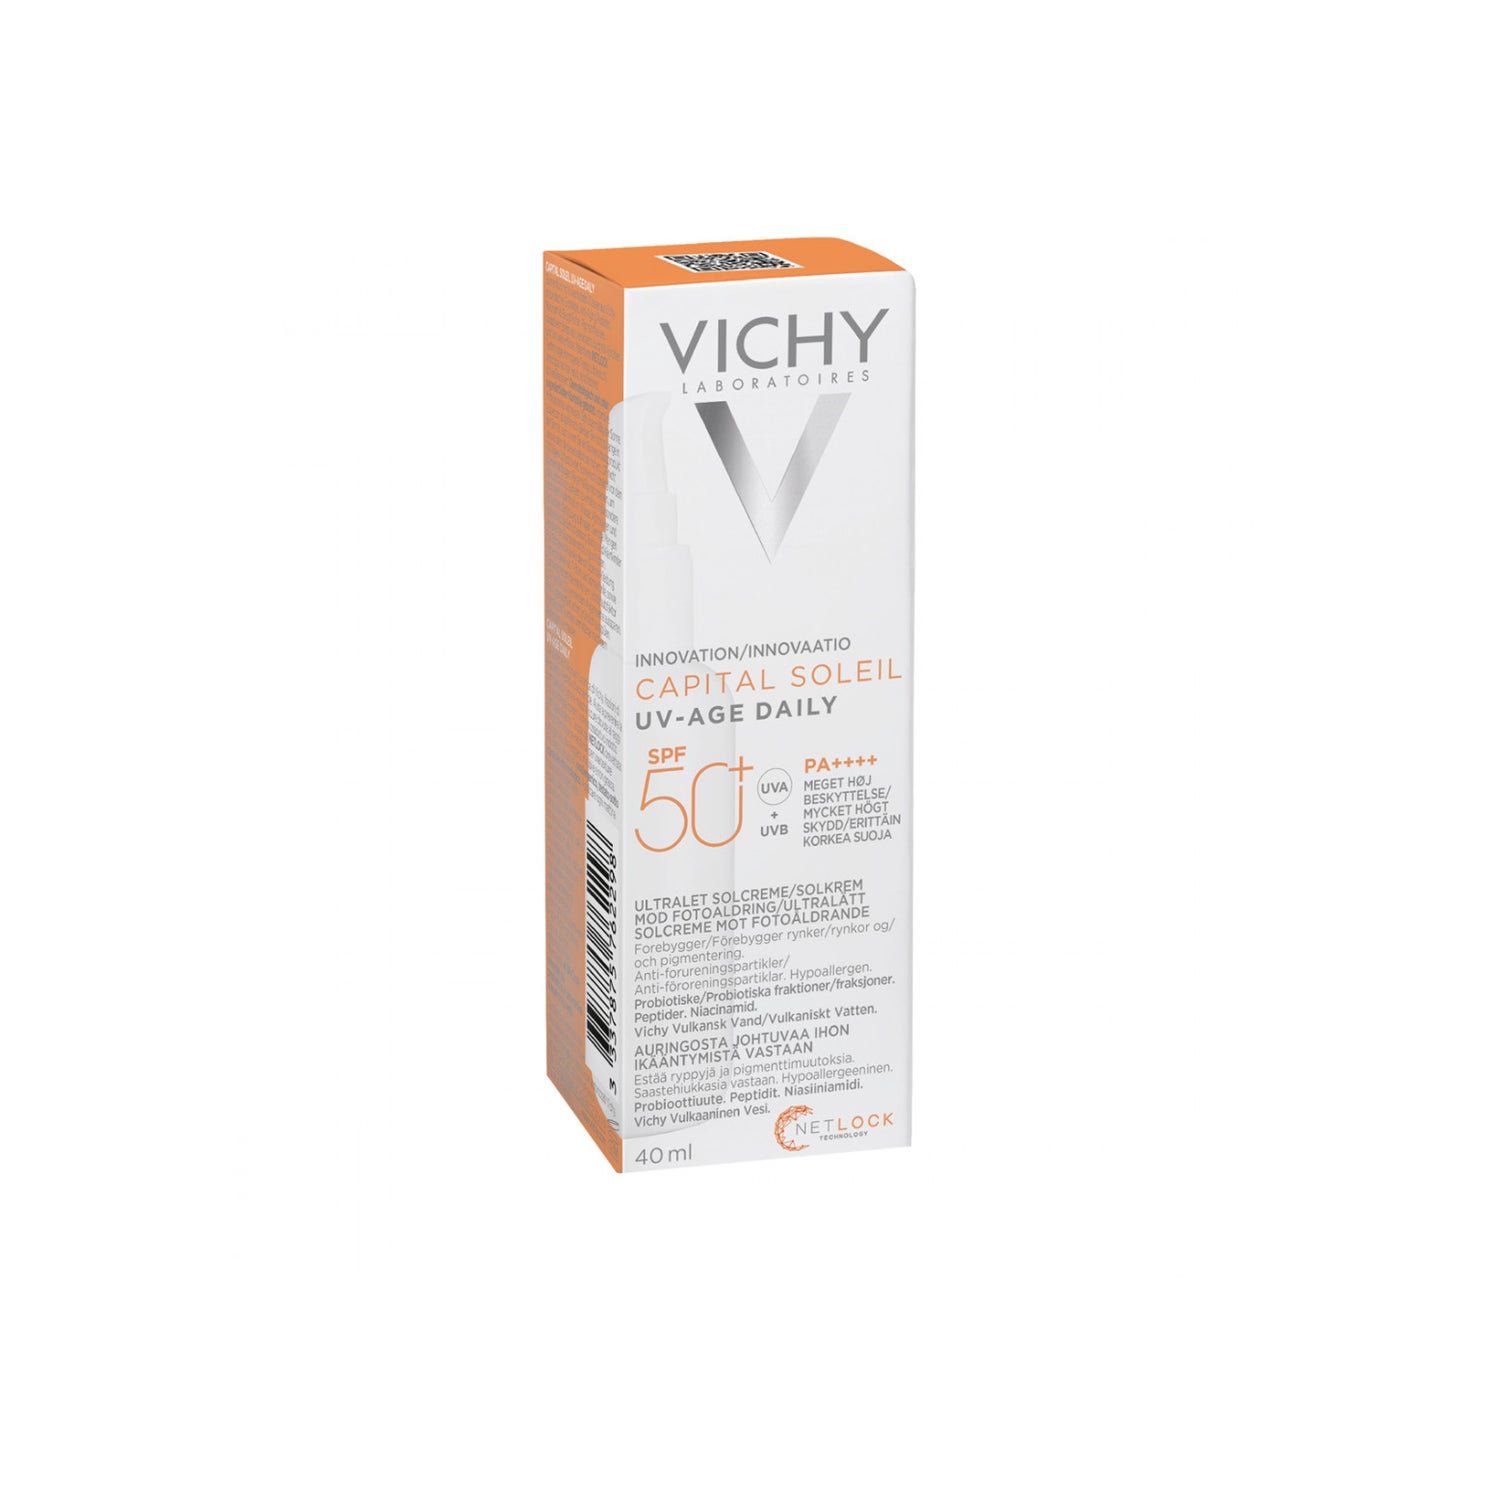 Vichy capital soleil spf 50 флюид